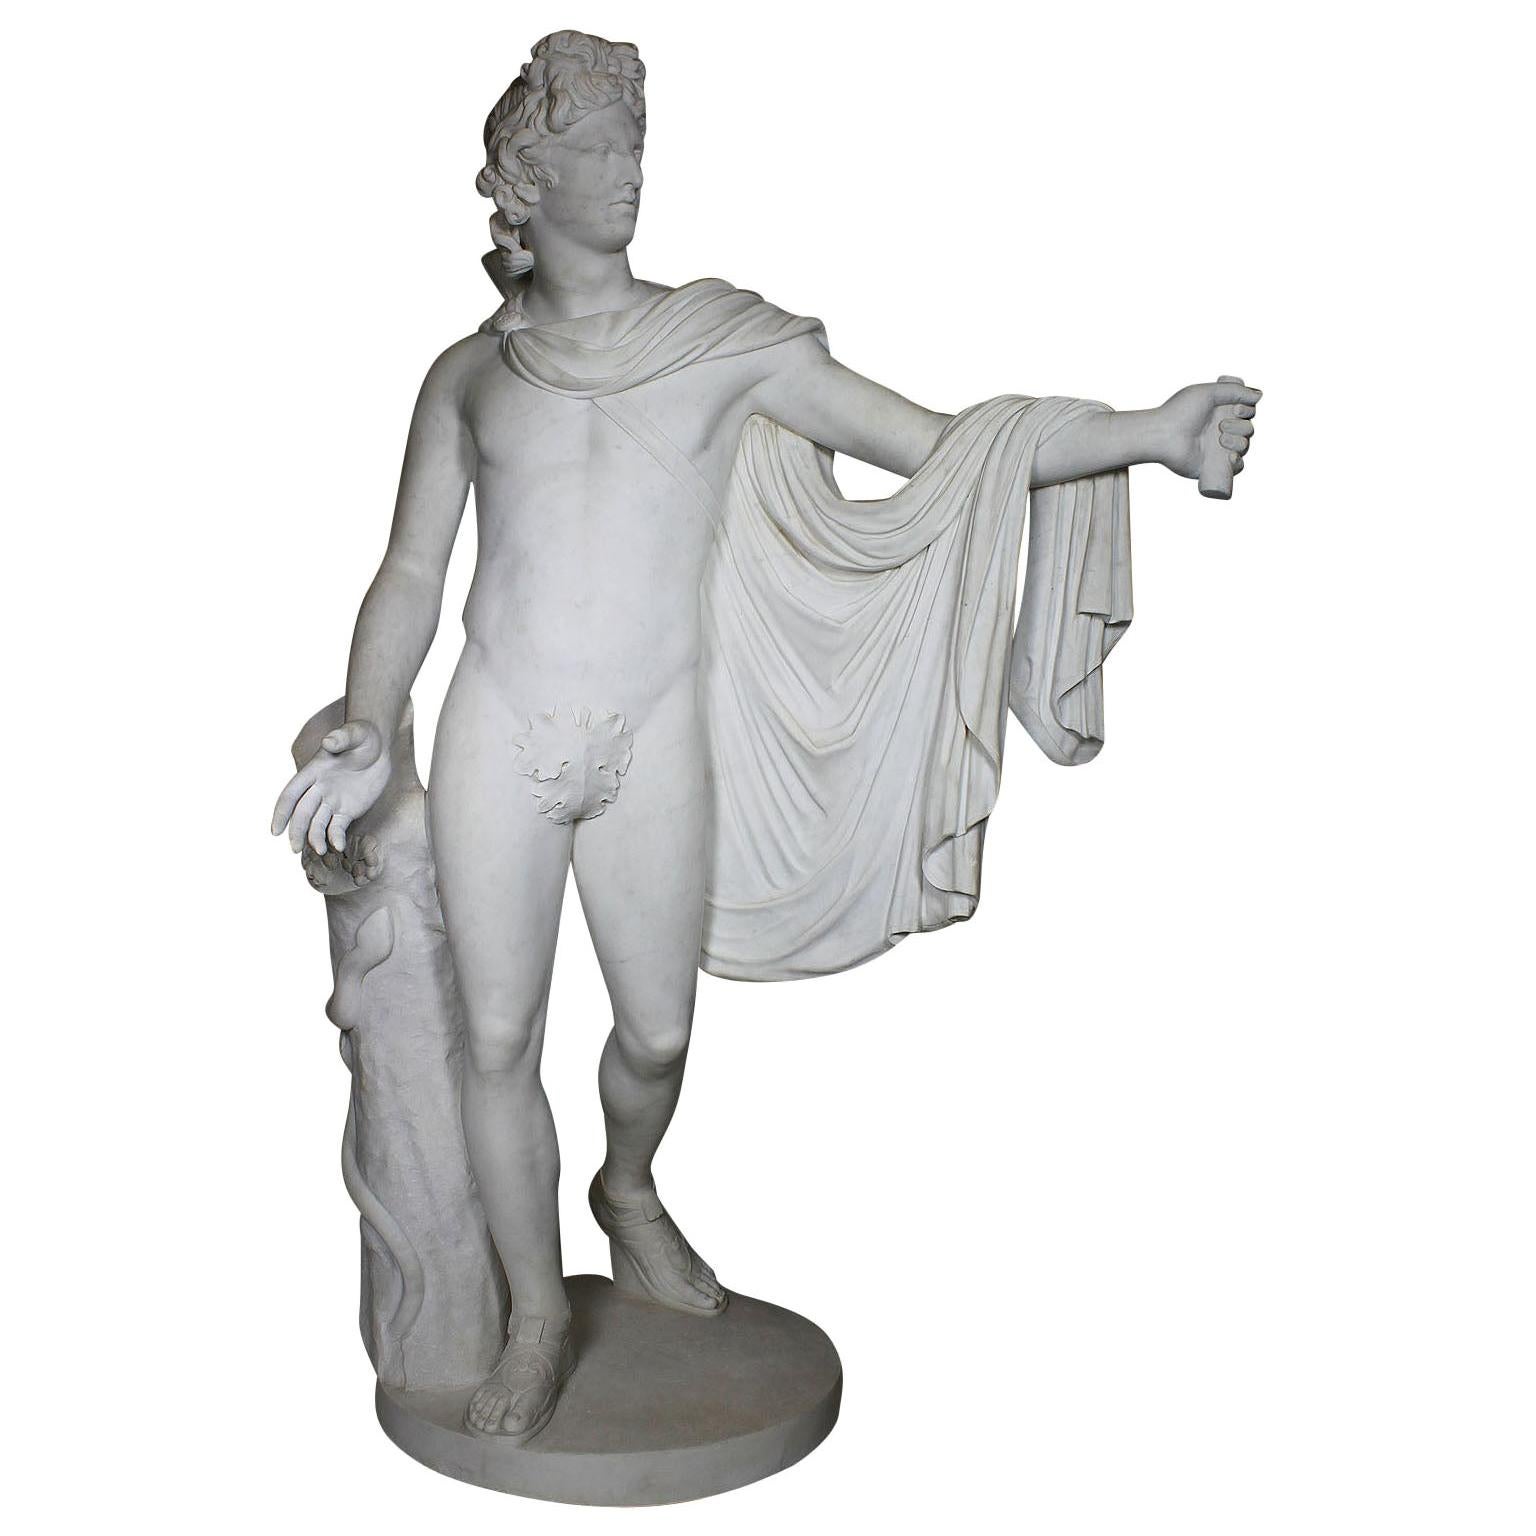 Ferdinando Vichi Lifesize Marble Figure "Apollo Belvedere" For Sale